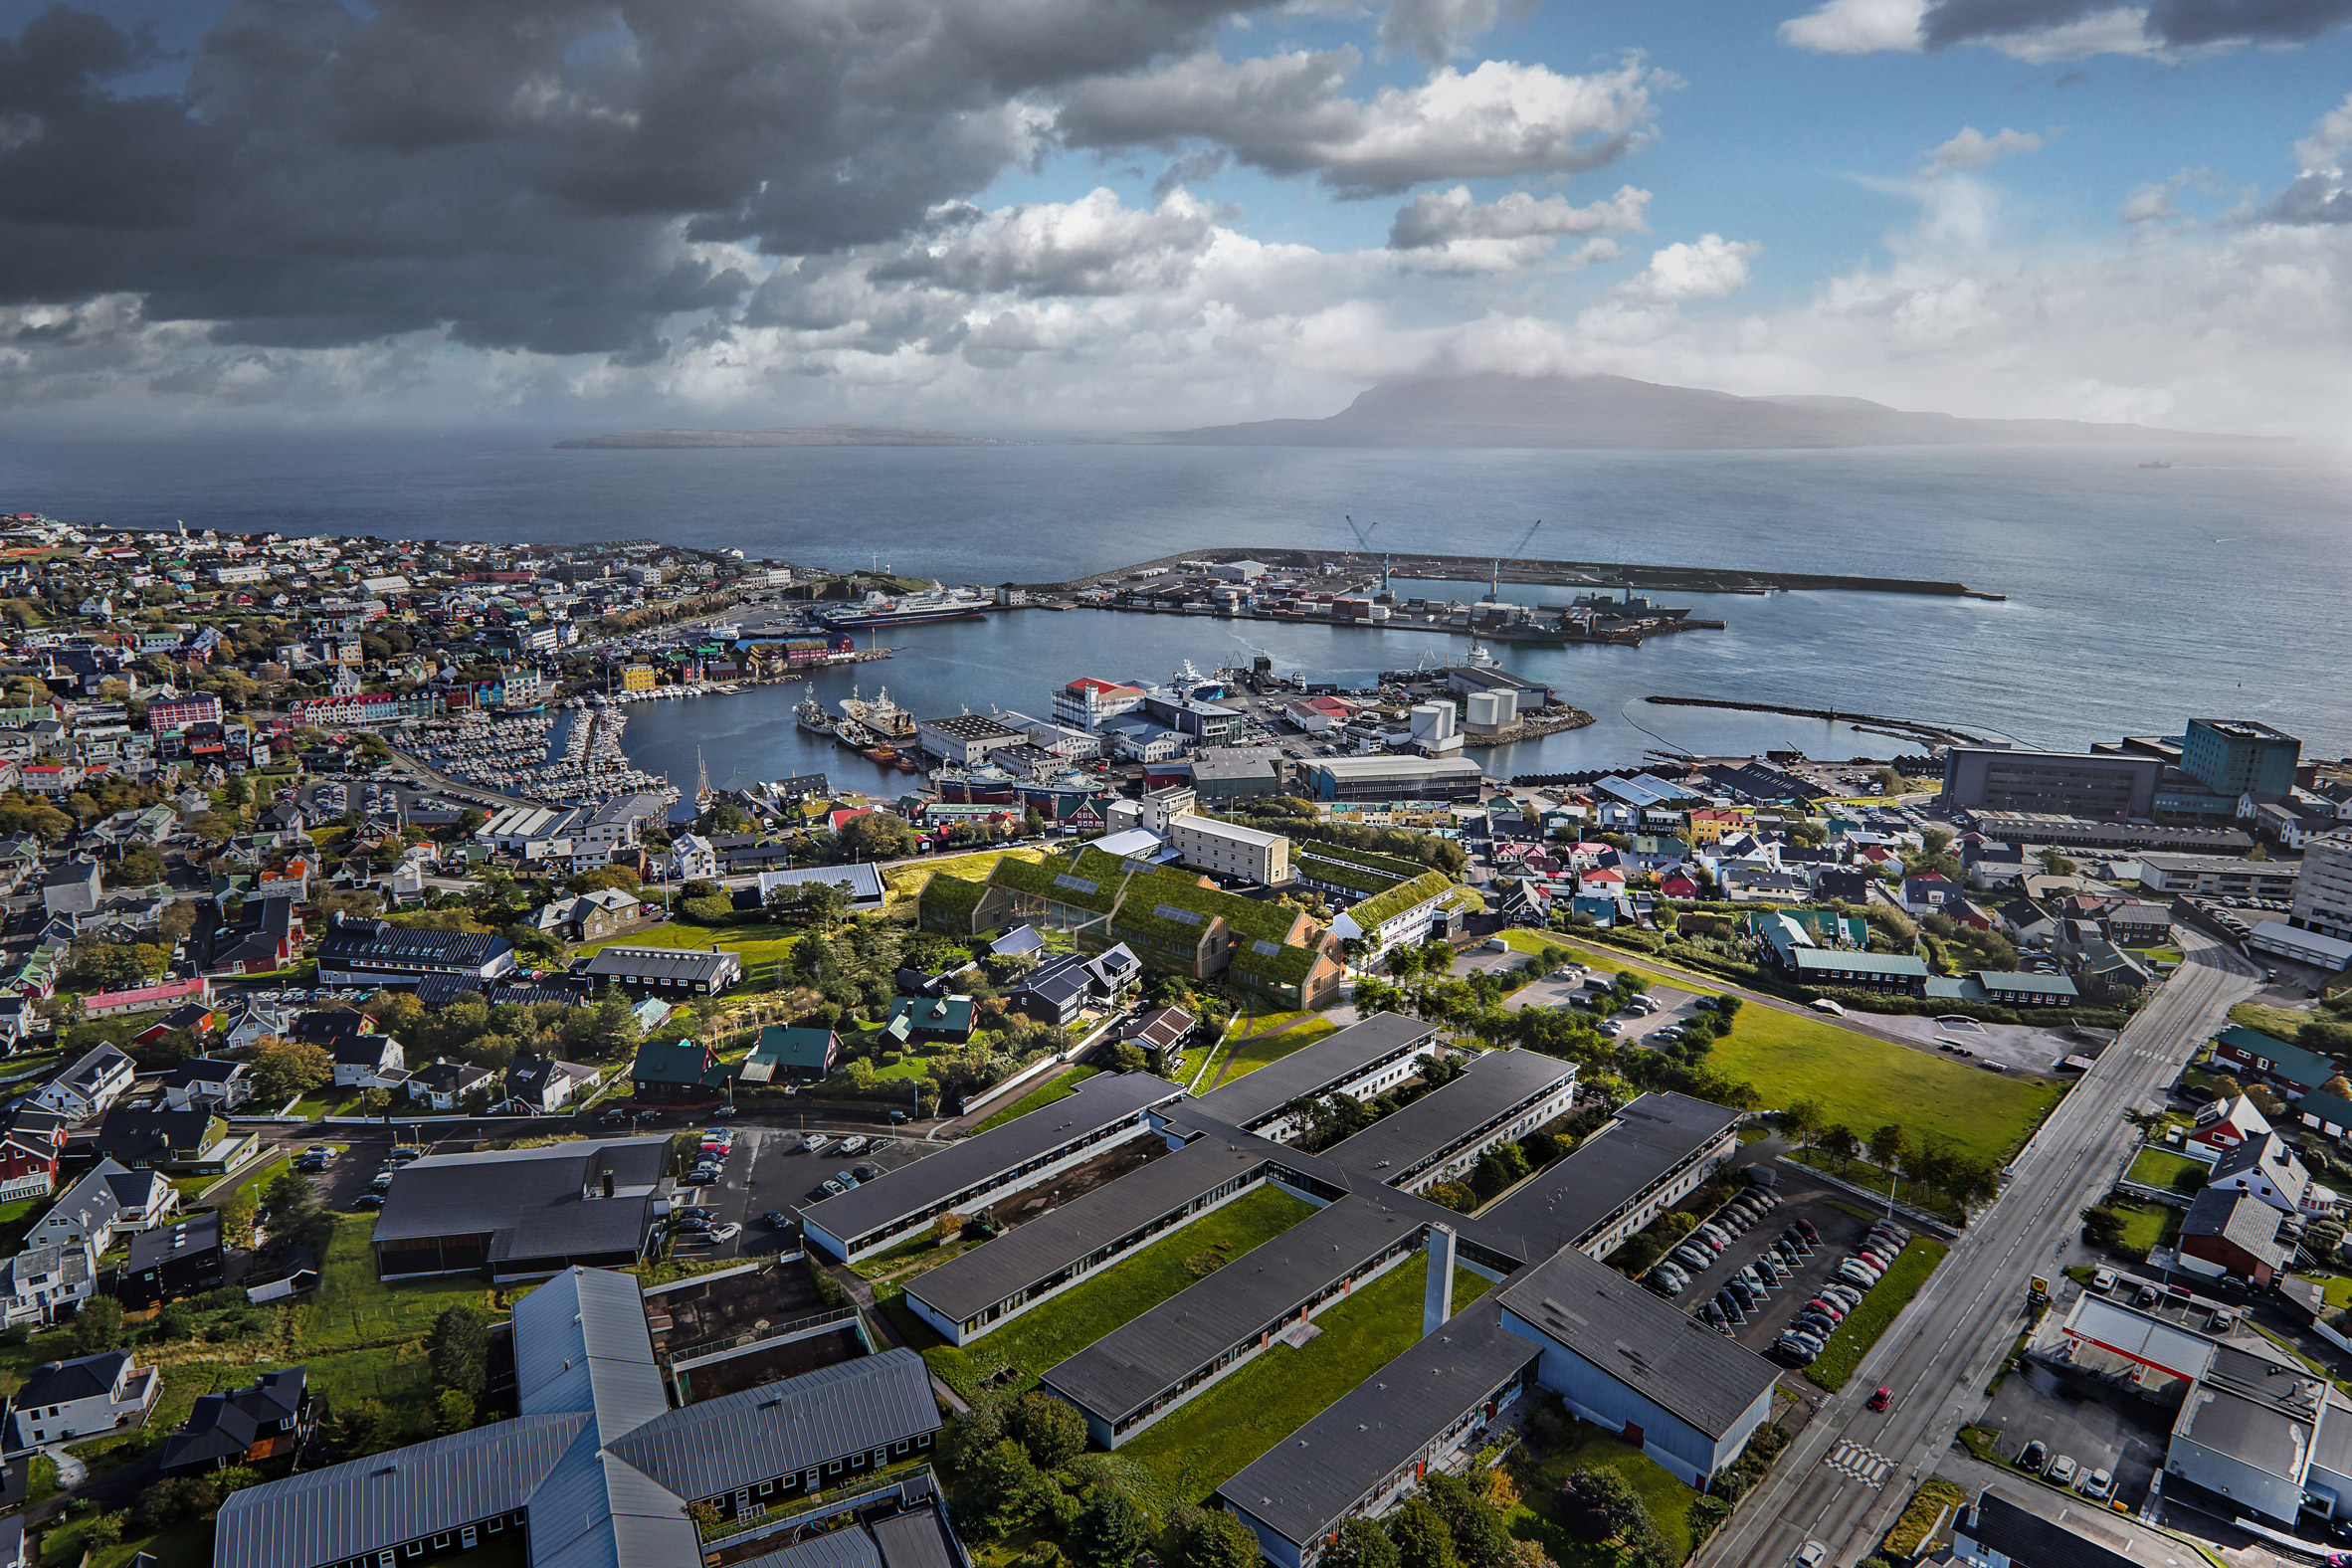 Render of University of the Faroe Islands